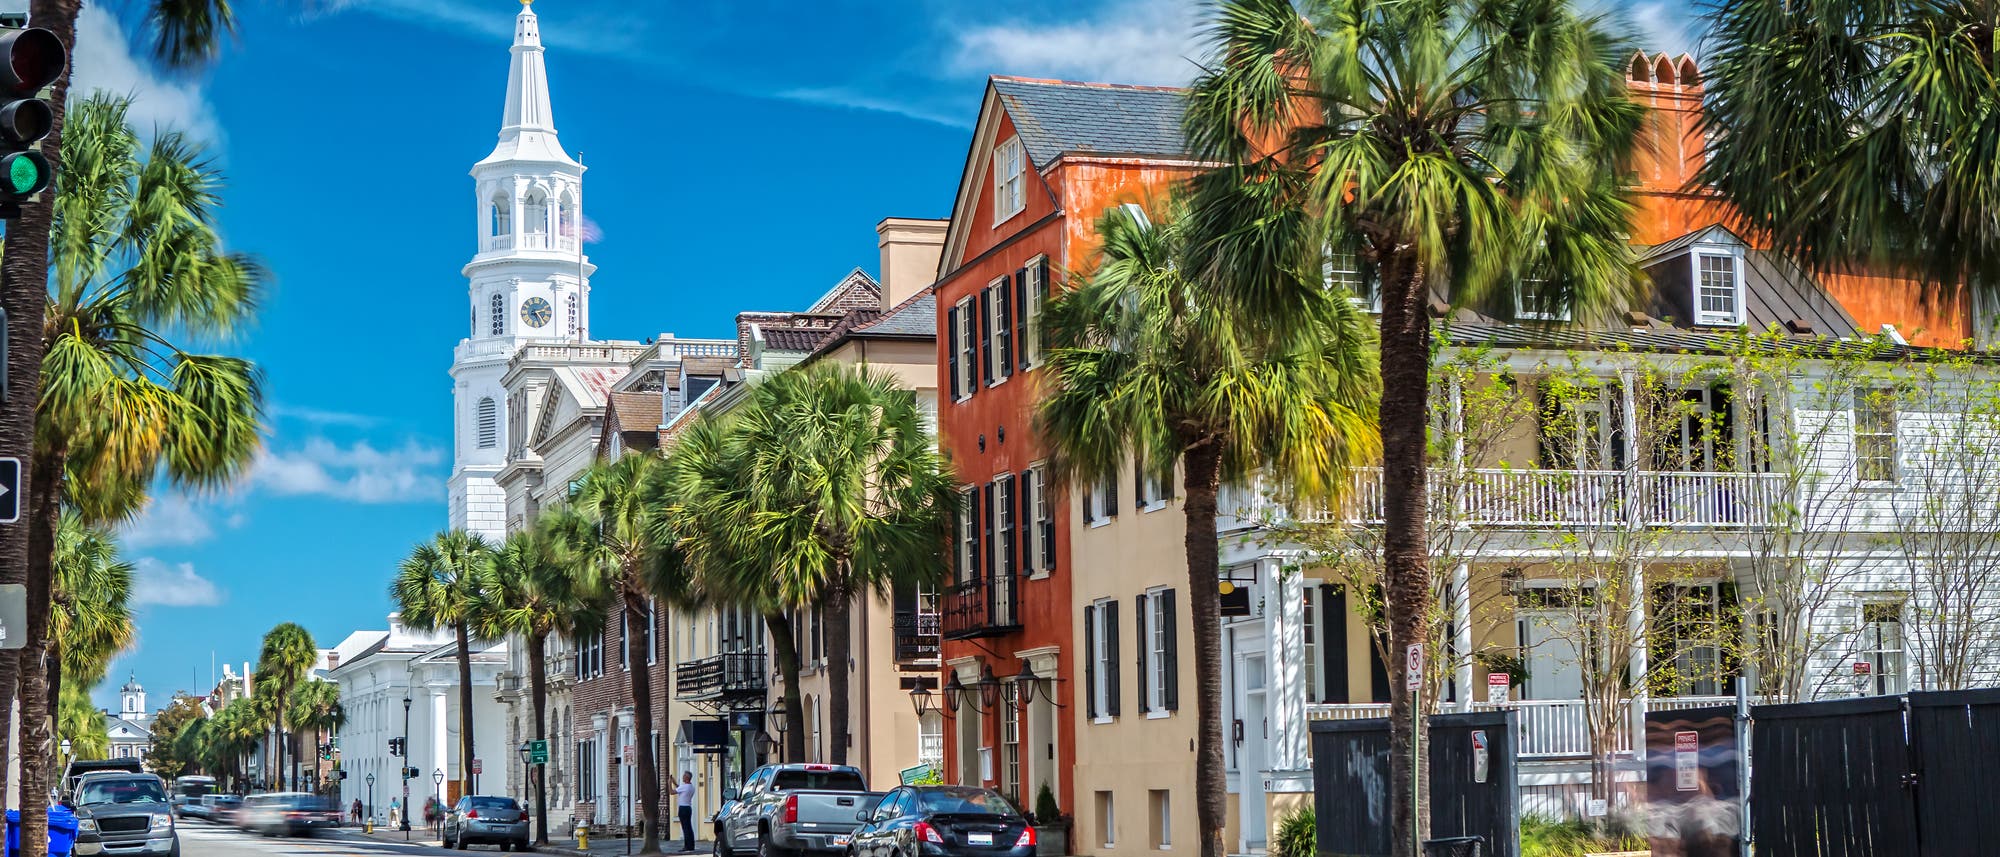 Straßenszene aus Charleston, South Carolina: Im Hintergrund die weiße St.-Michaels-Kirche, der Himmel ist blau, Palmen säumen den Straßenrand.